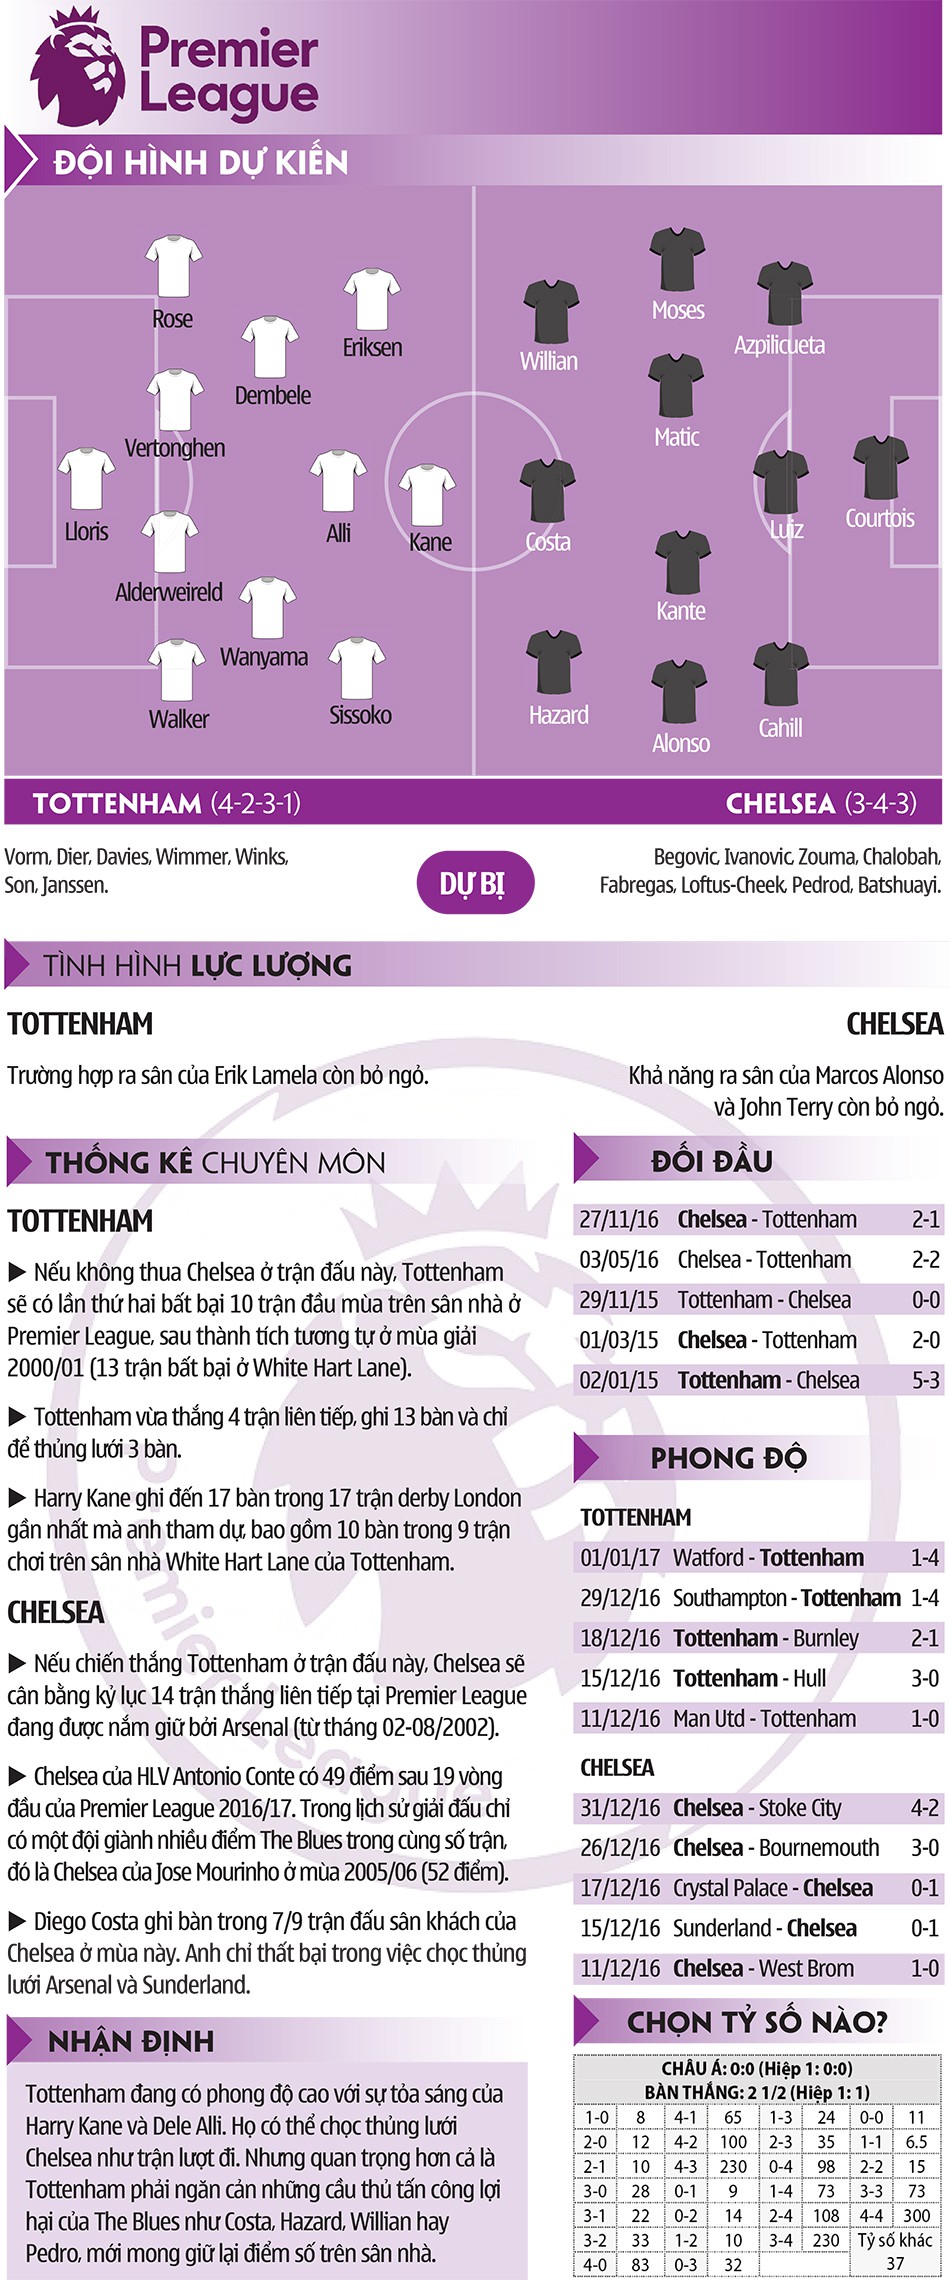 Tottenham – Chelsea: Conte có quá nhiều người hùng